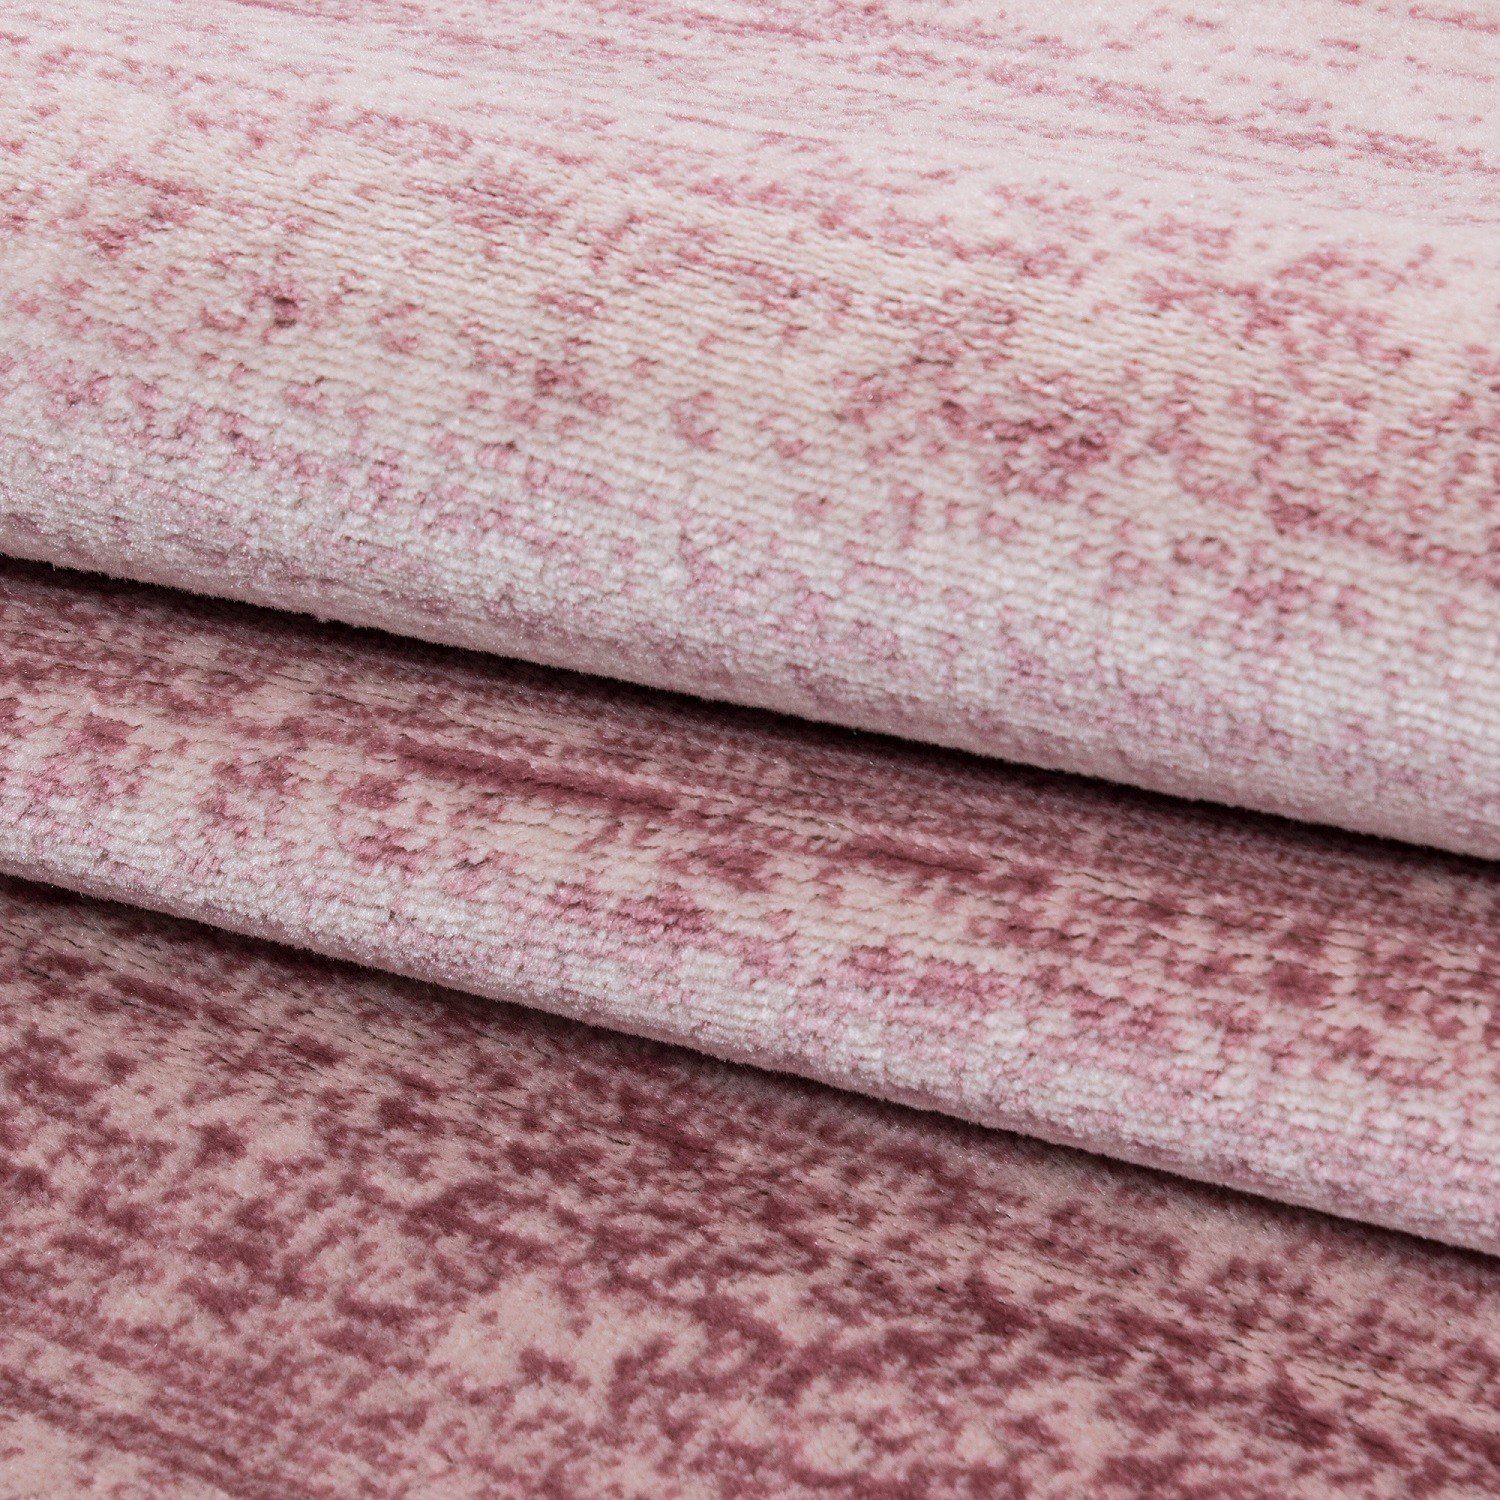 Flachflorteppich Pink Designteppich Kurzflorteppich Designerteppich meliert Miovani Wohnzimmer,